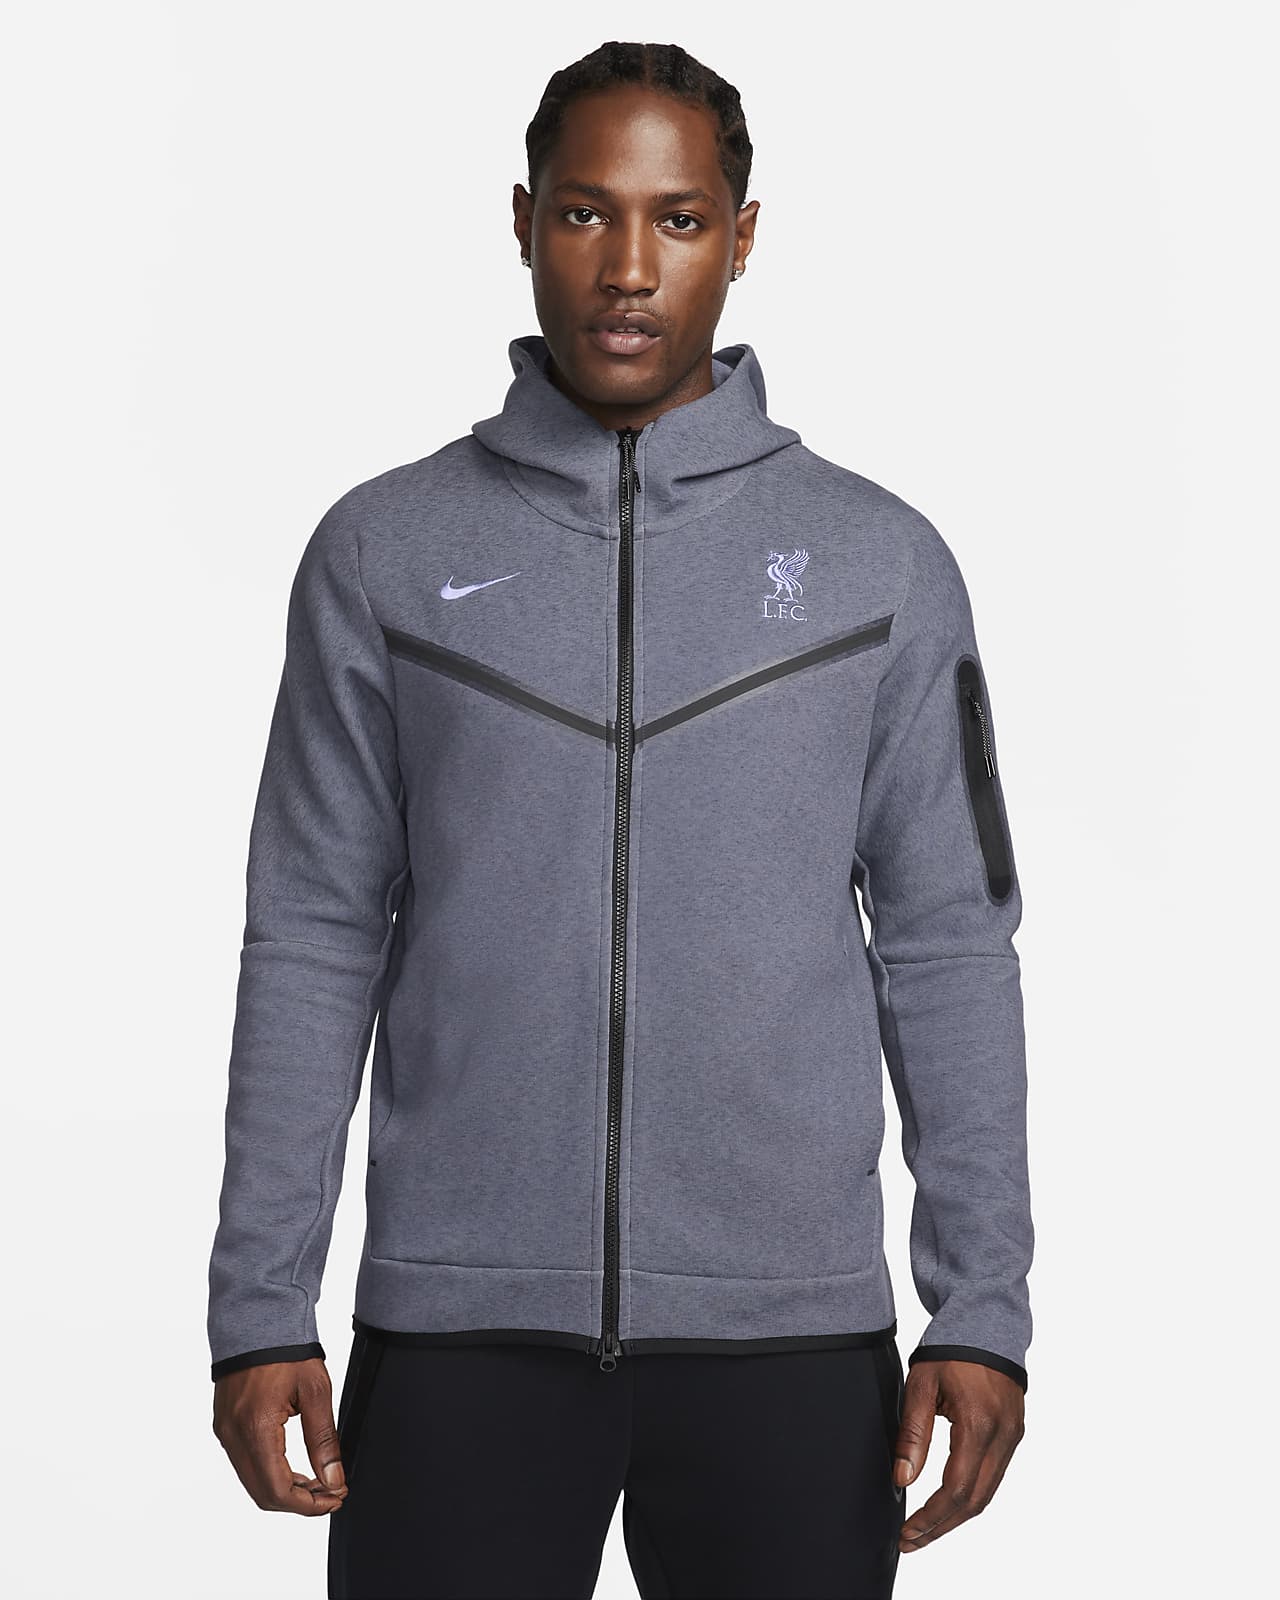 Ανδρική ποδοσφαιρική μπλούζα με κουκούλα και φερμουάρ σε όλο το μήκος Nike εναλλακτικής εμφάνισης Λίβερπουλ Tech Fleece Windrunner